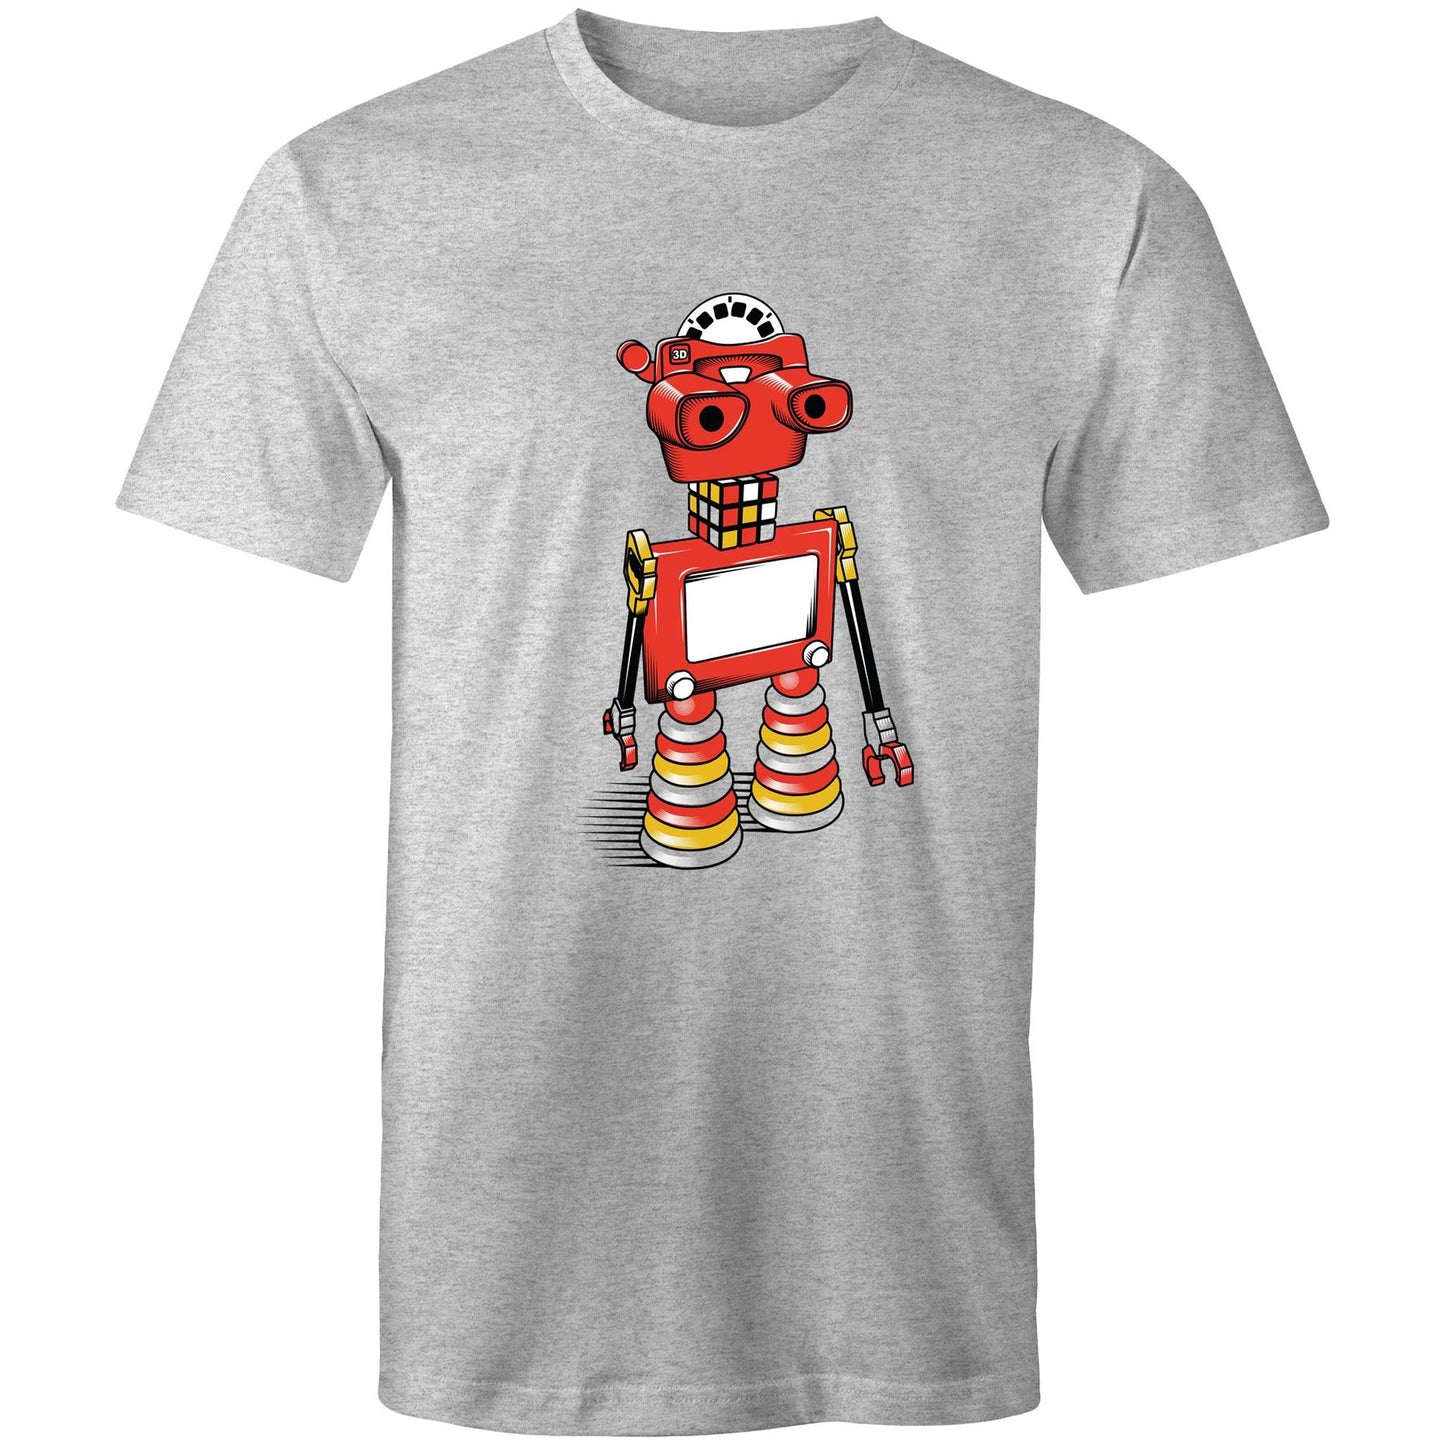 ViewBot 3000 - Men's T-Shirt